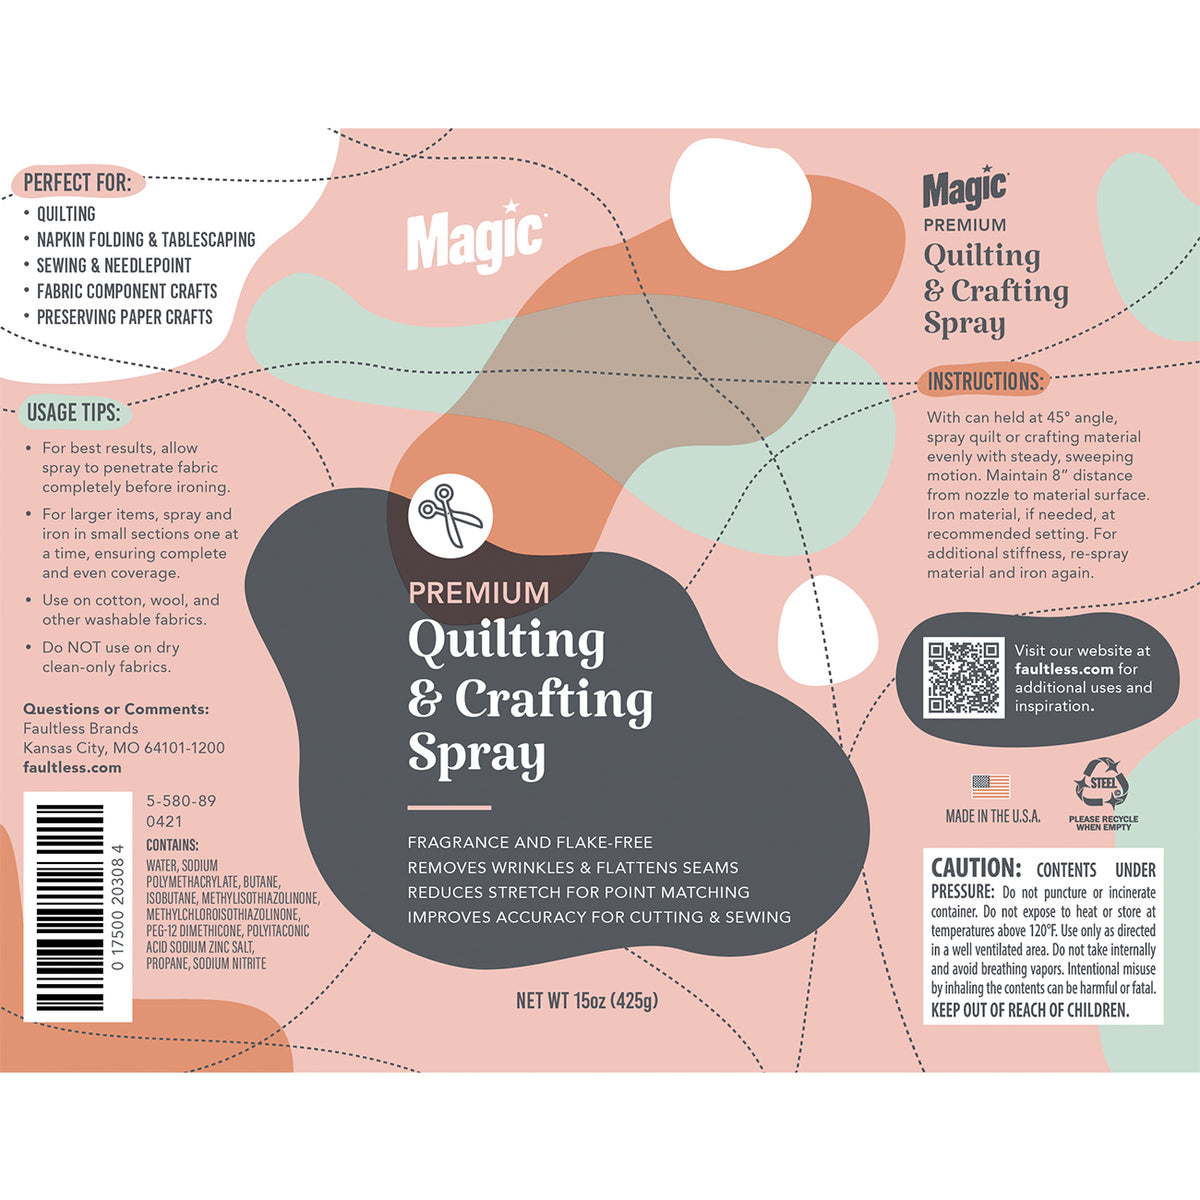 Magic Premium Quilting & Crafting Spray Refill-32oz : Target